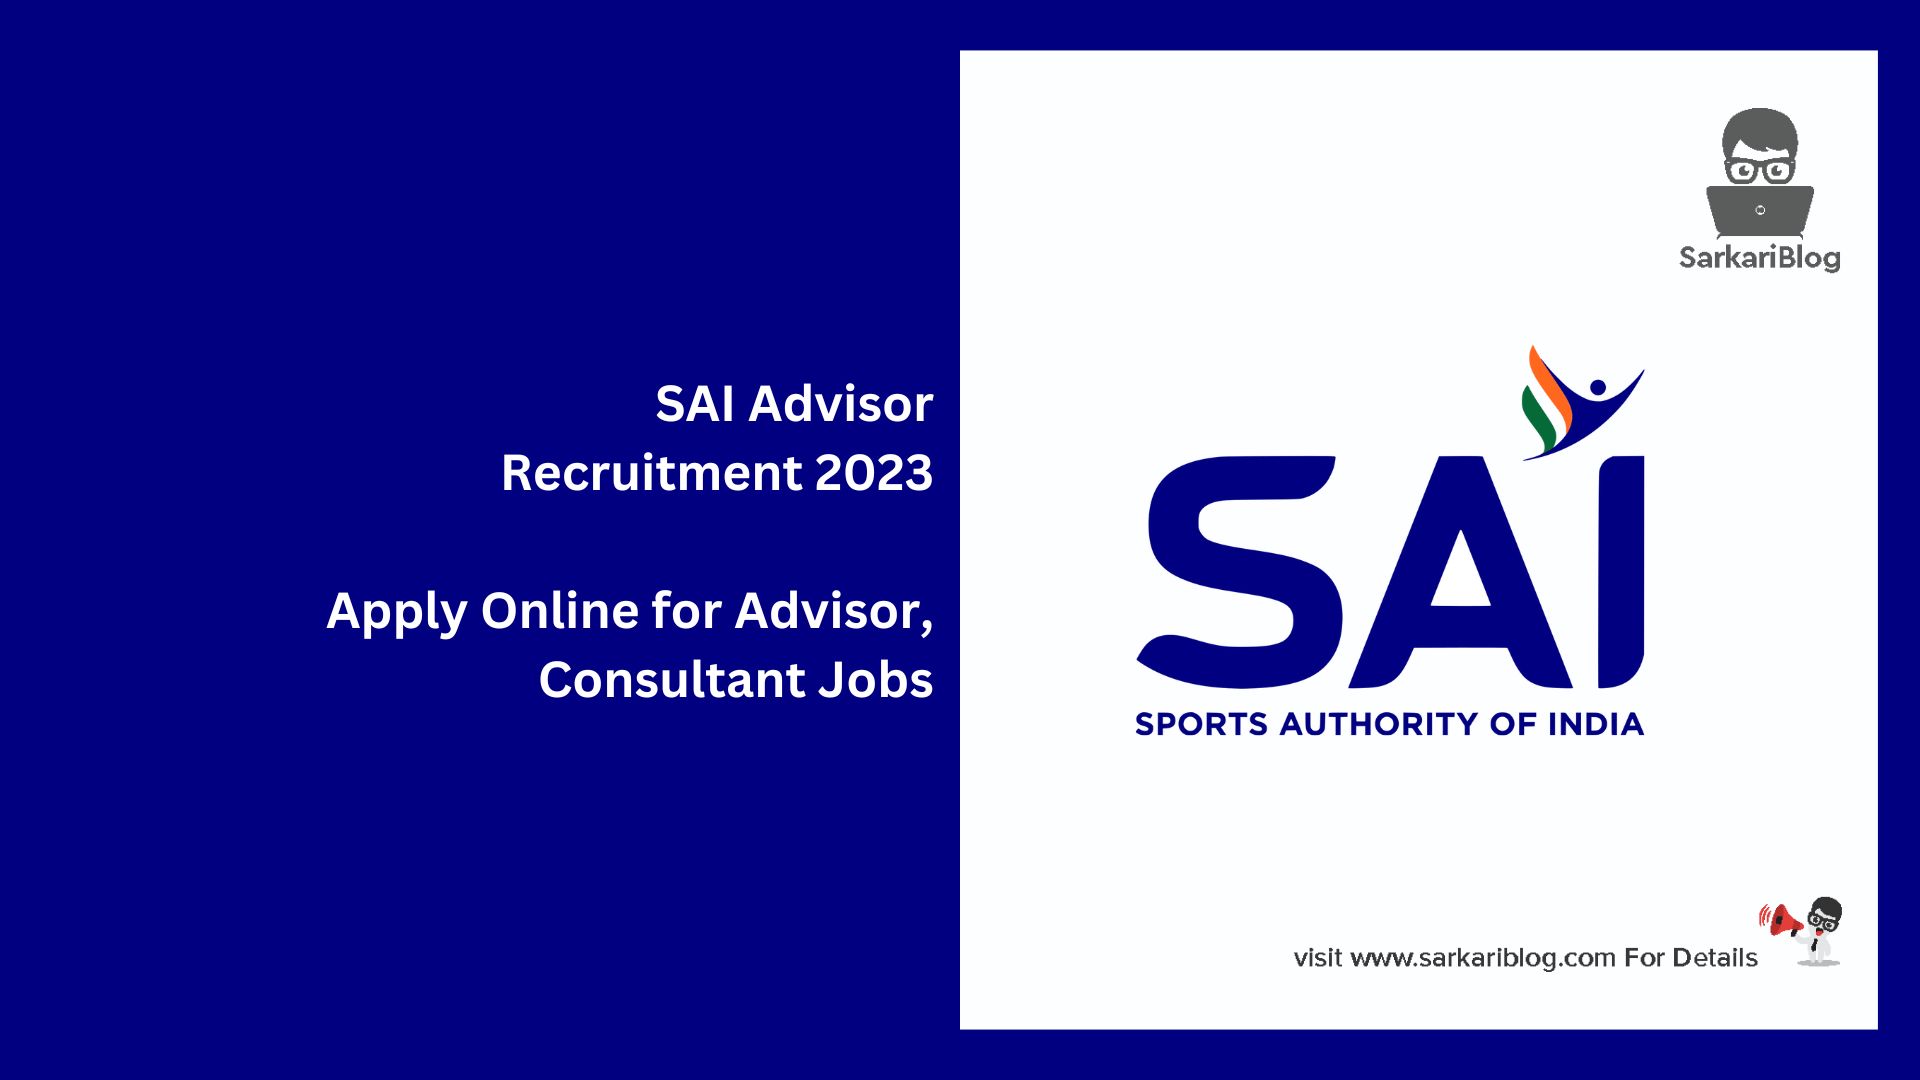 SAI Advisor Recruitment 2023